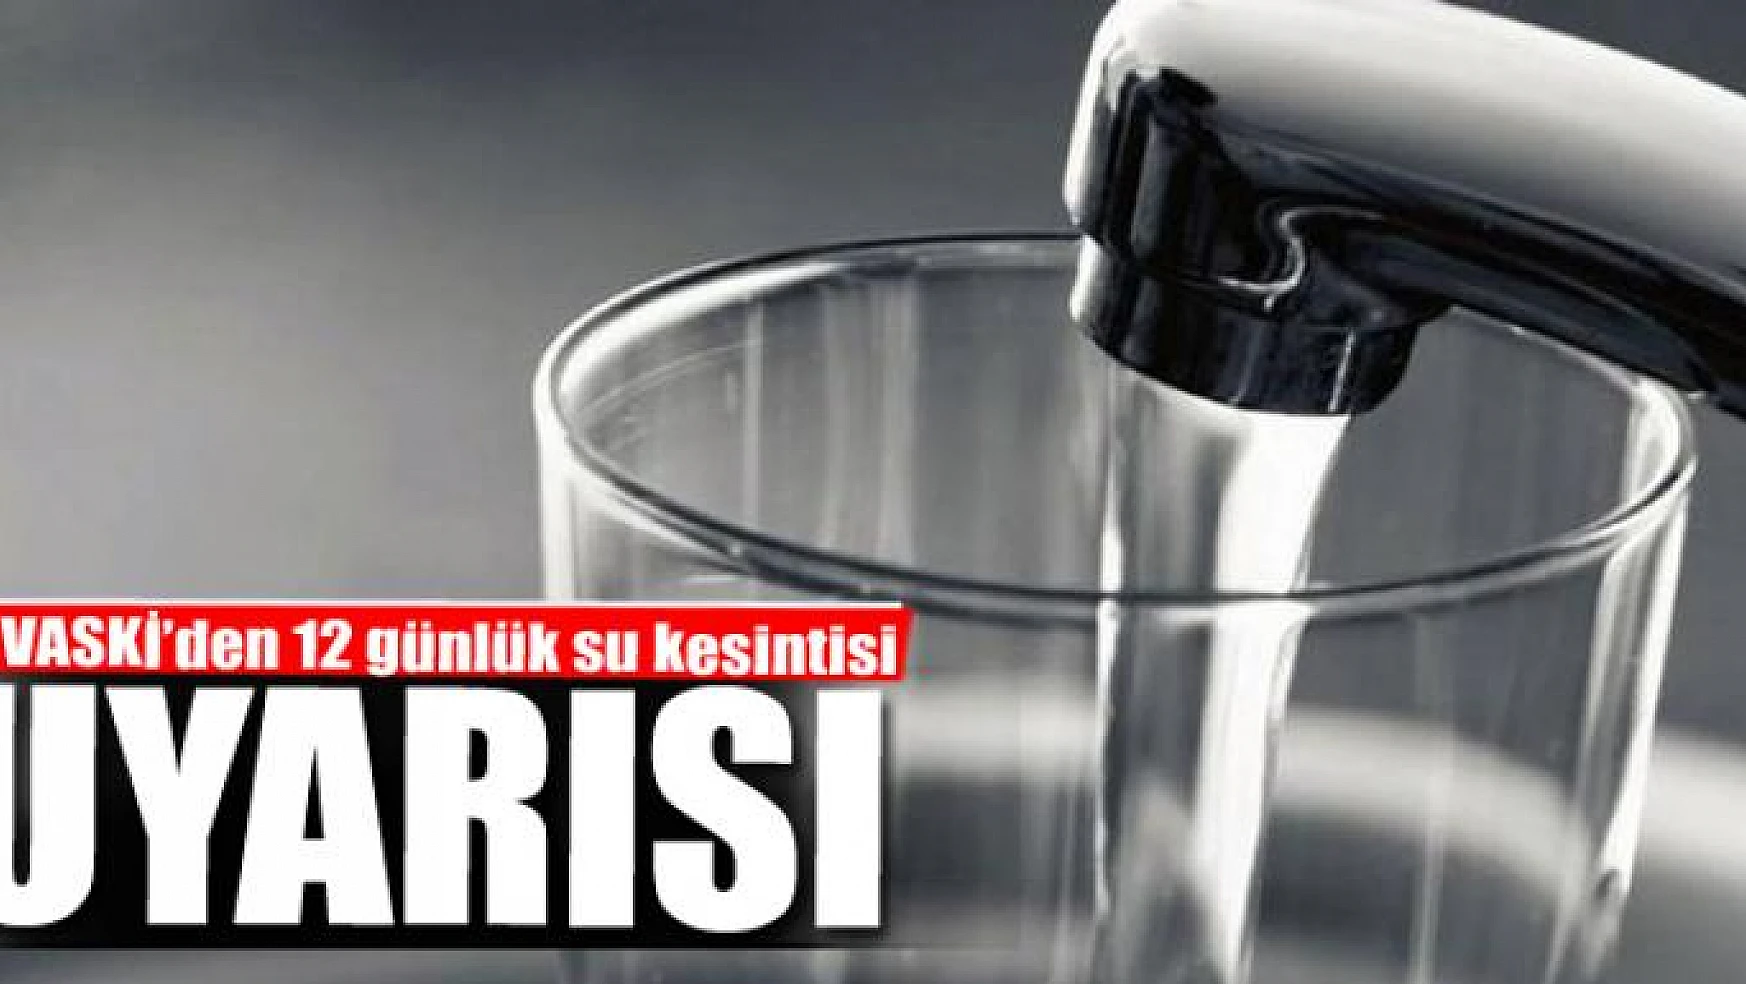 VASKİ'den 12 günlük su kesintisi uyarısı